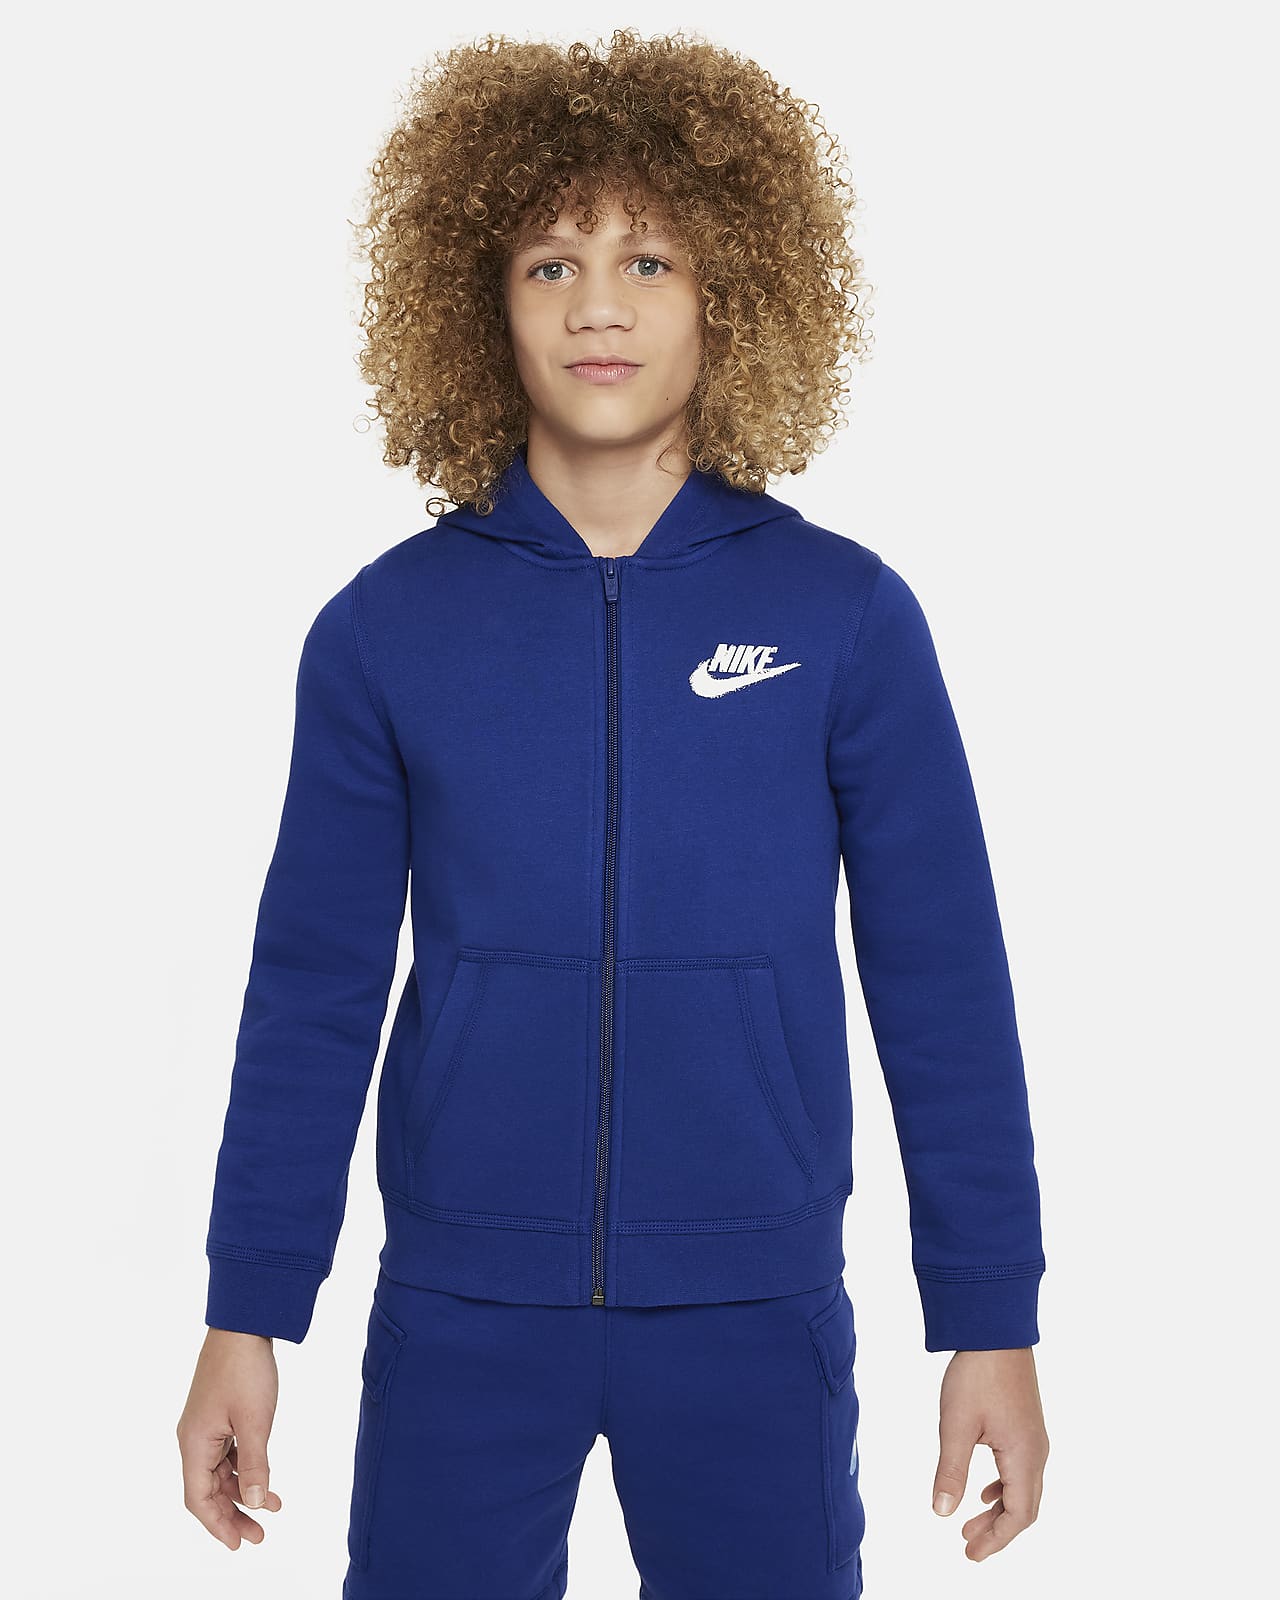 Flísová mikina Nike Sportswear s kapucí, zipem po celé délce a grafickým motivem pro větší děti (chlapce)